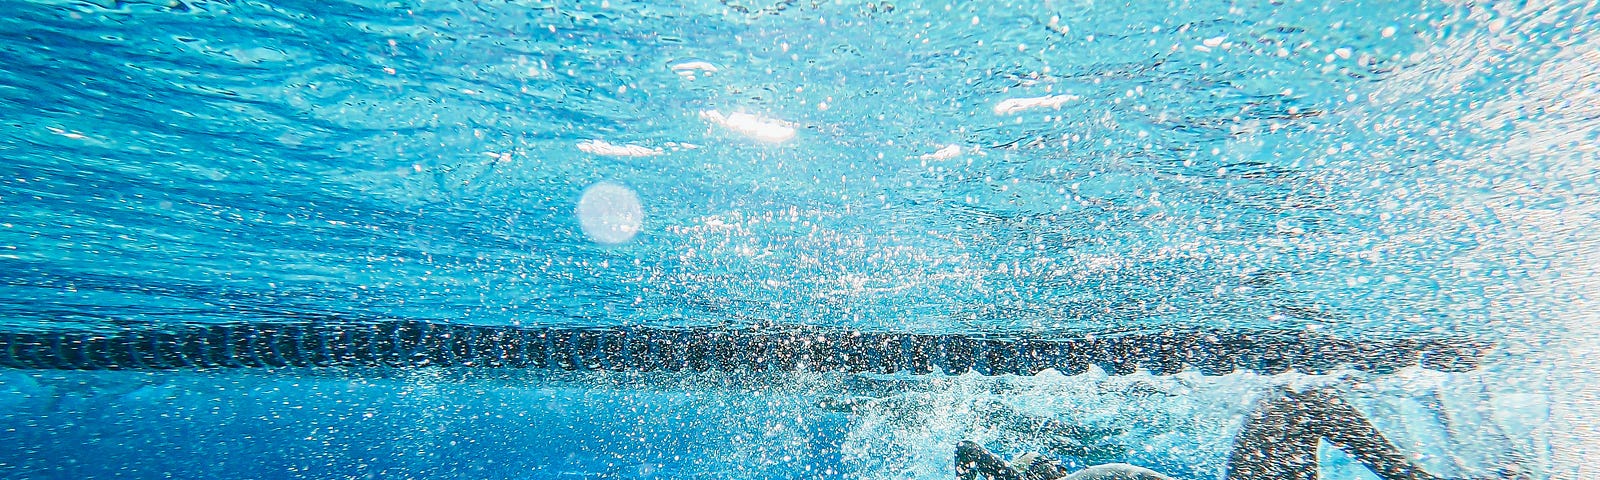 A woman in a black bikini swimming in a pool